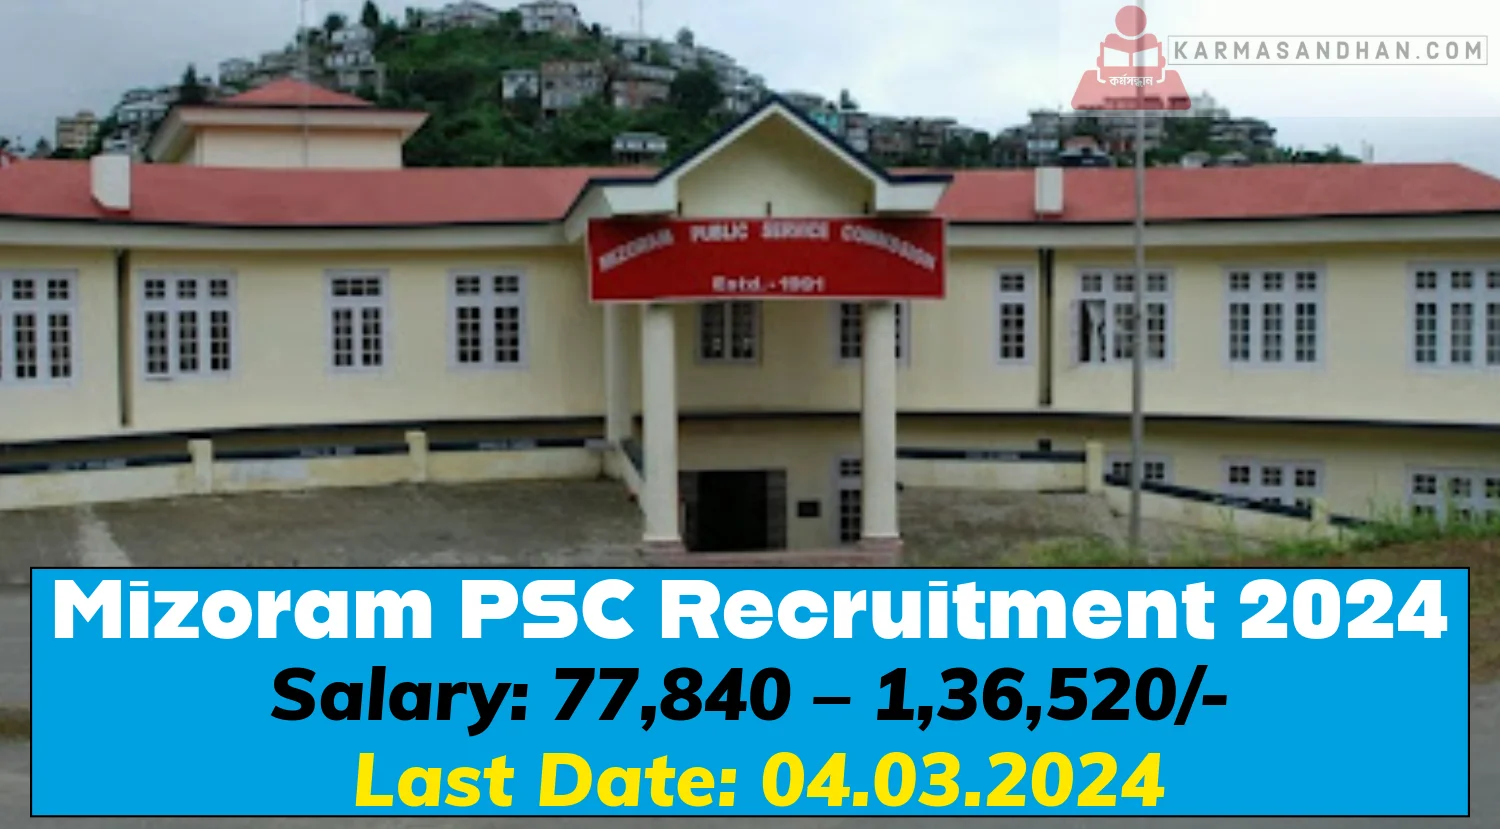 Mizoram PSC Recruitment 2024 Notification Out Check Details